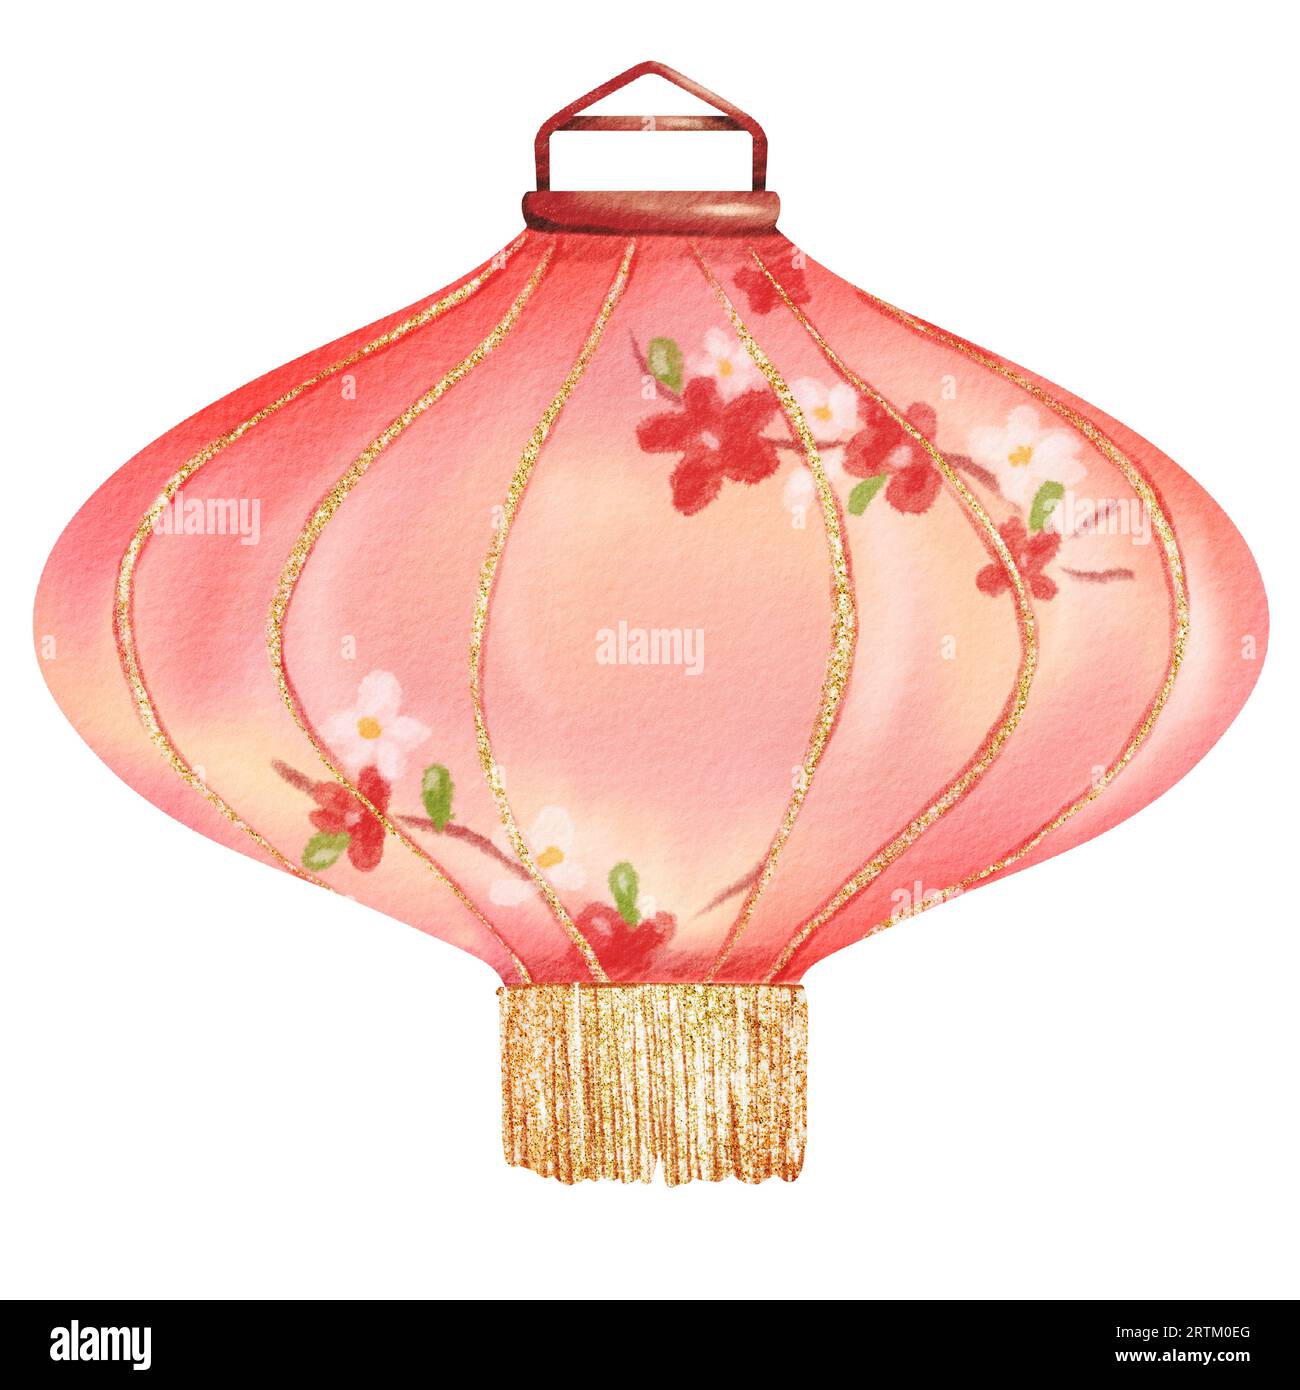 Lanterna di carta cinese rosa, caratterizzata da intricati fiori rossi e bianchi dipinti a mano e da una frangia dorata. Questa illustrazione isolata dell'acquerello Foto Stock